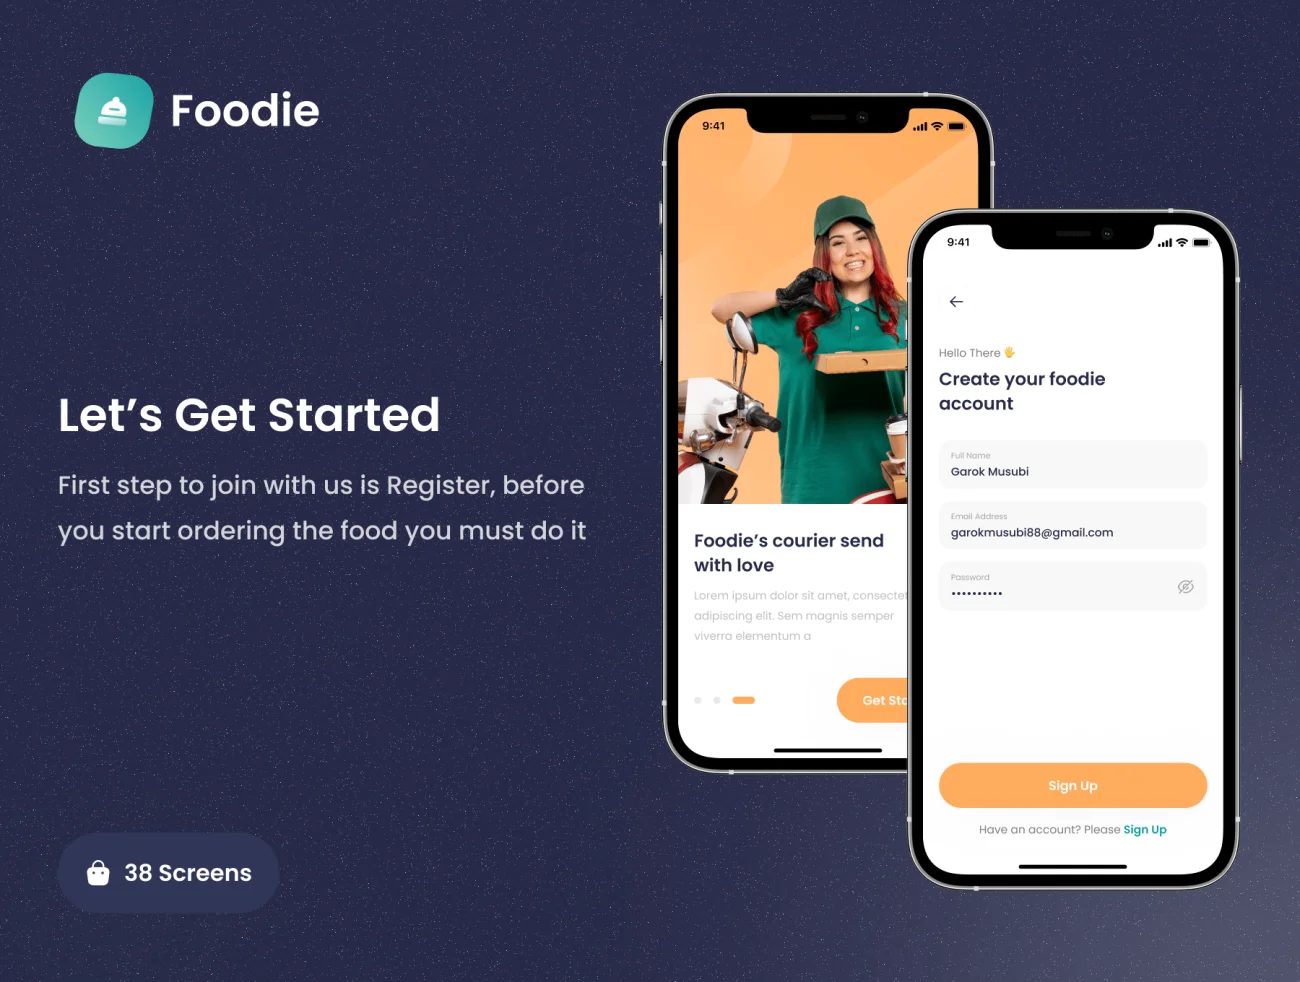 38屏外卖点餐配送应用手机套件 Foodie - Food Delivery App UI KIT-UI/UX、ui套件、主页、应用、网购、聊天、预订-到位啦UI